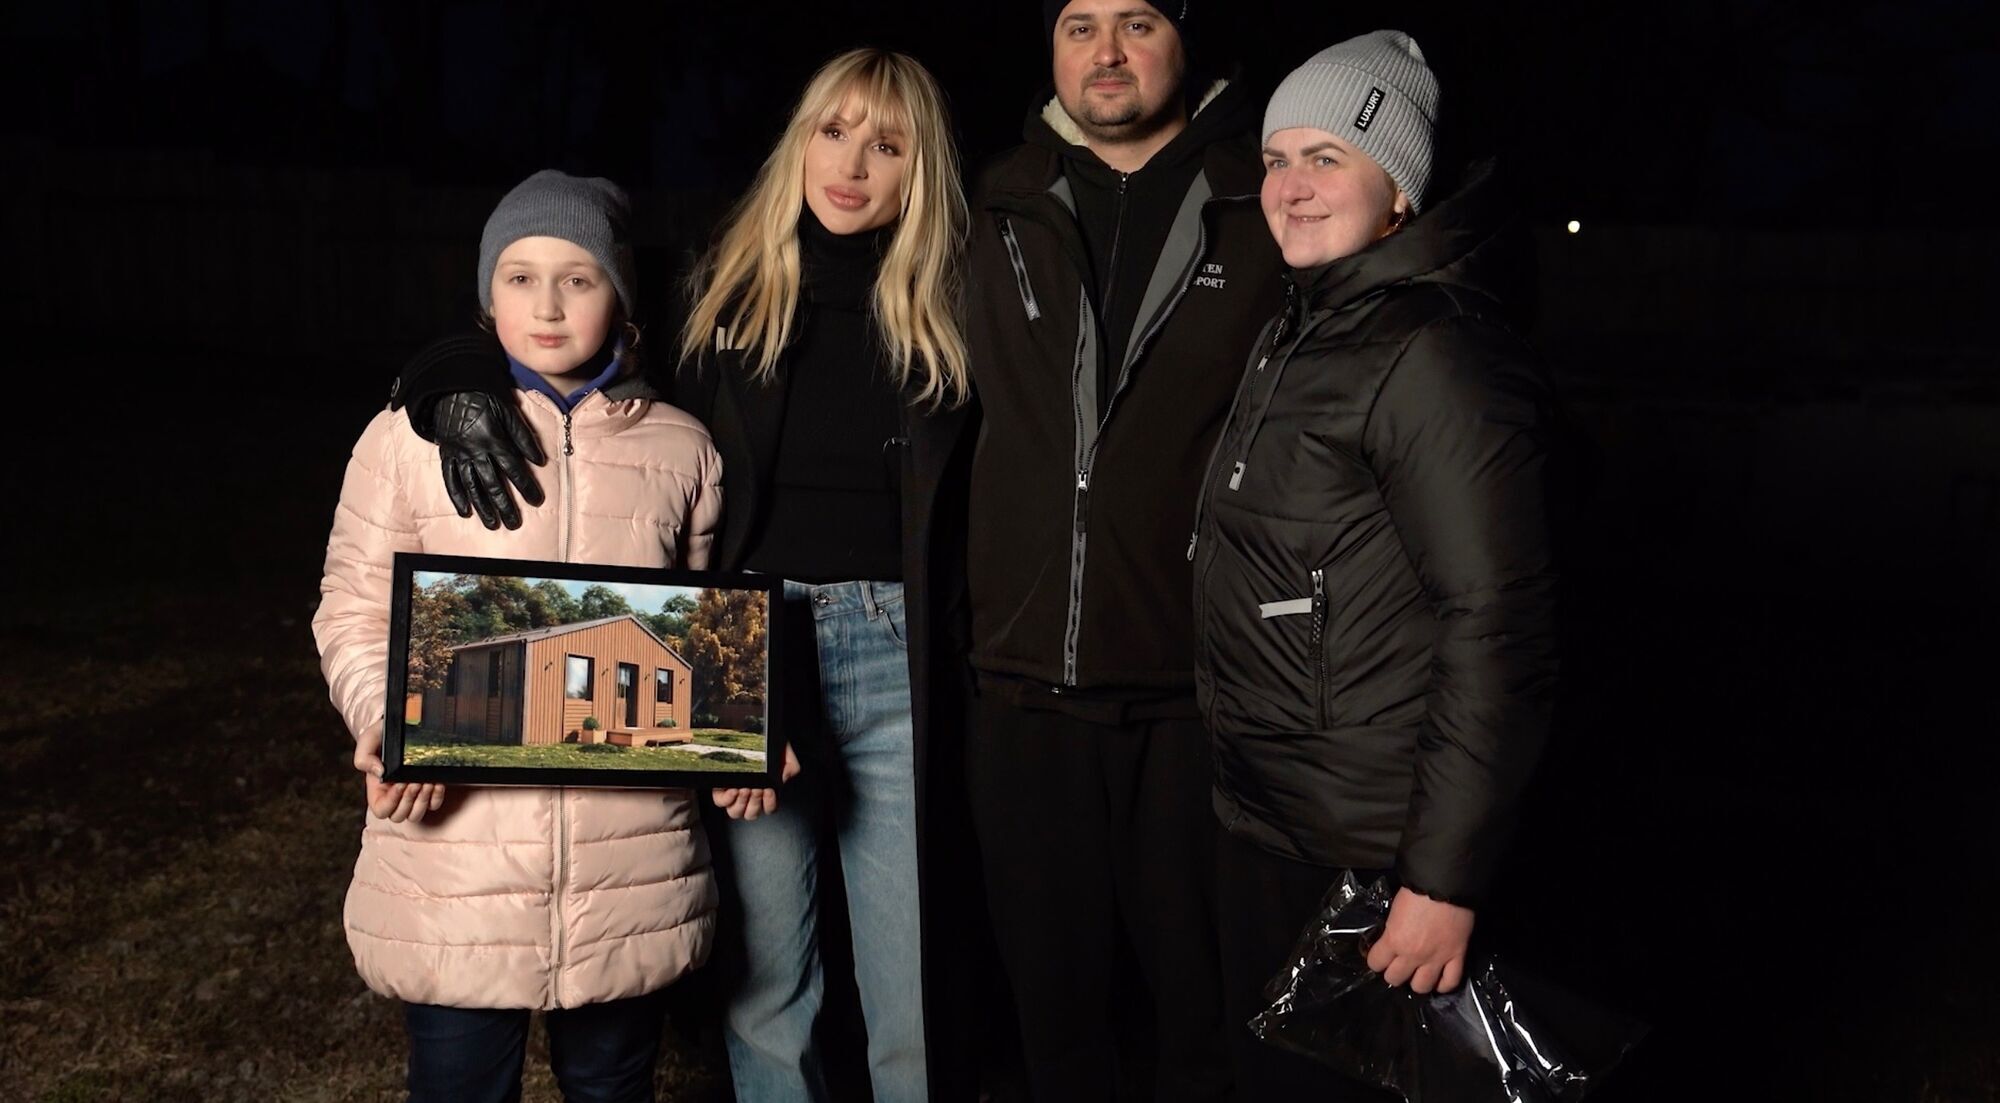 Шанс на новую жизнь: LOBODA подарила дом семье, чье жилье разрушил российский террор. Фото и видео